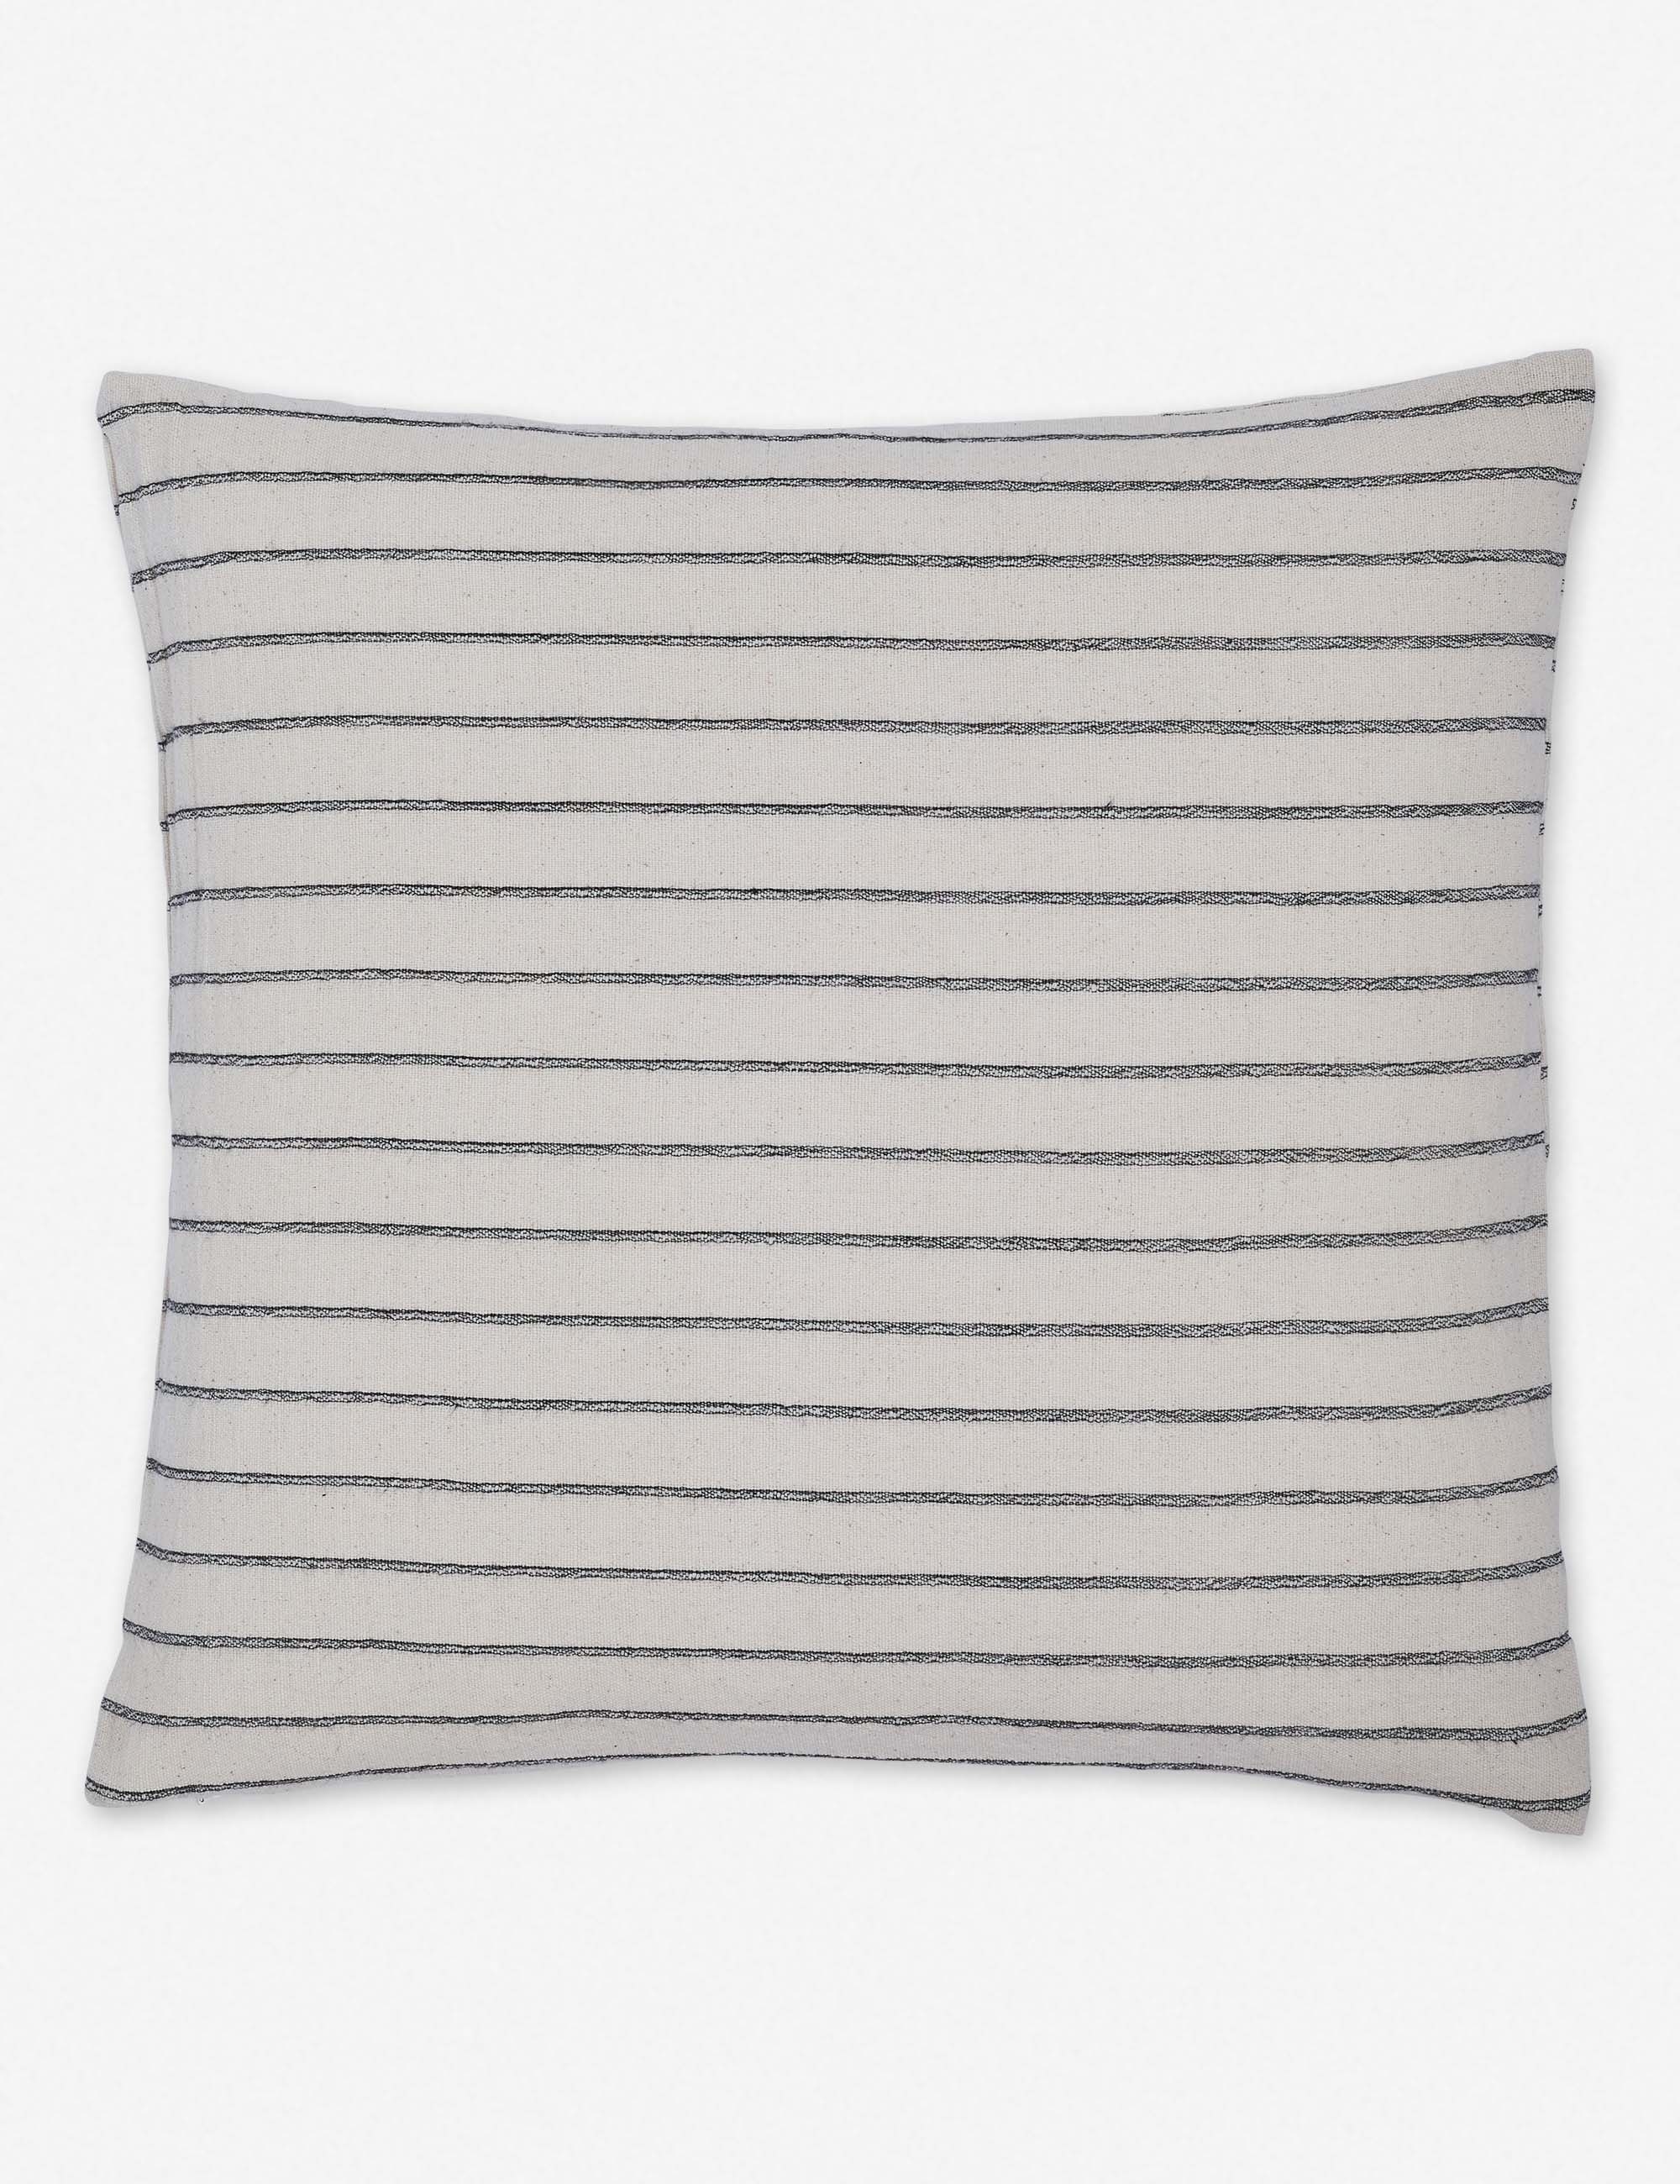 Ojai Pillow, Black, 20" x 20" - Image 0